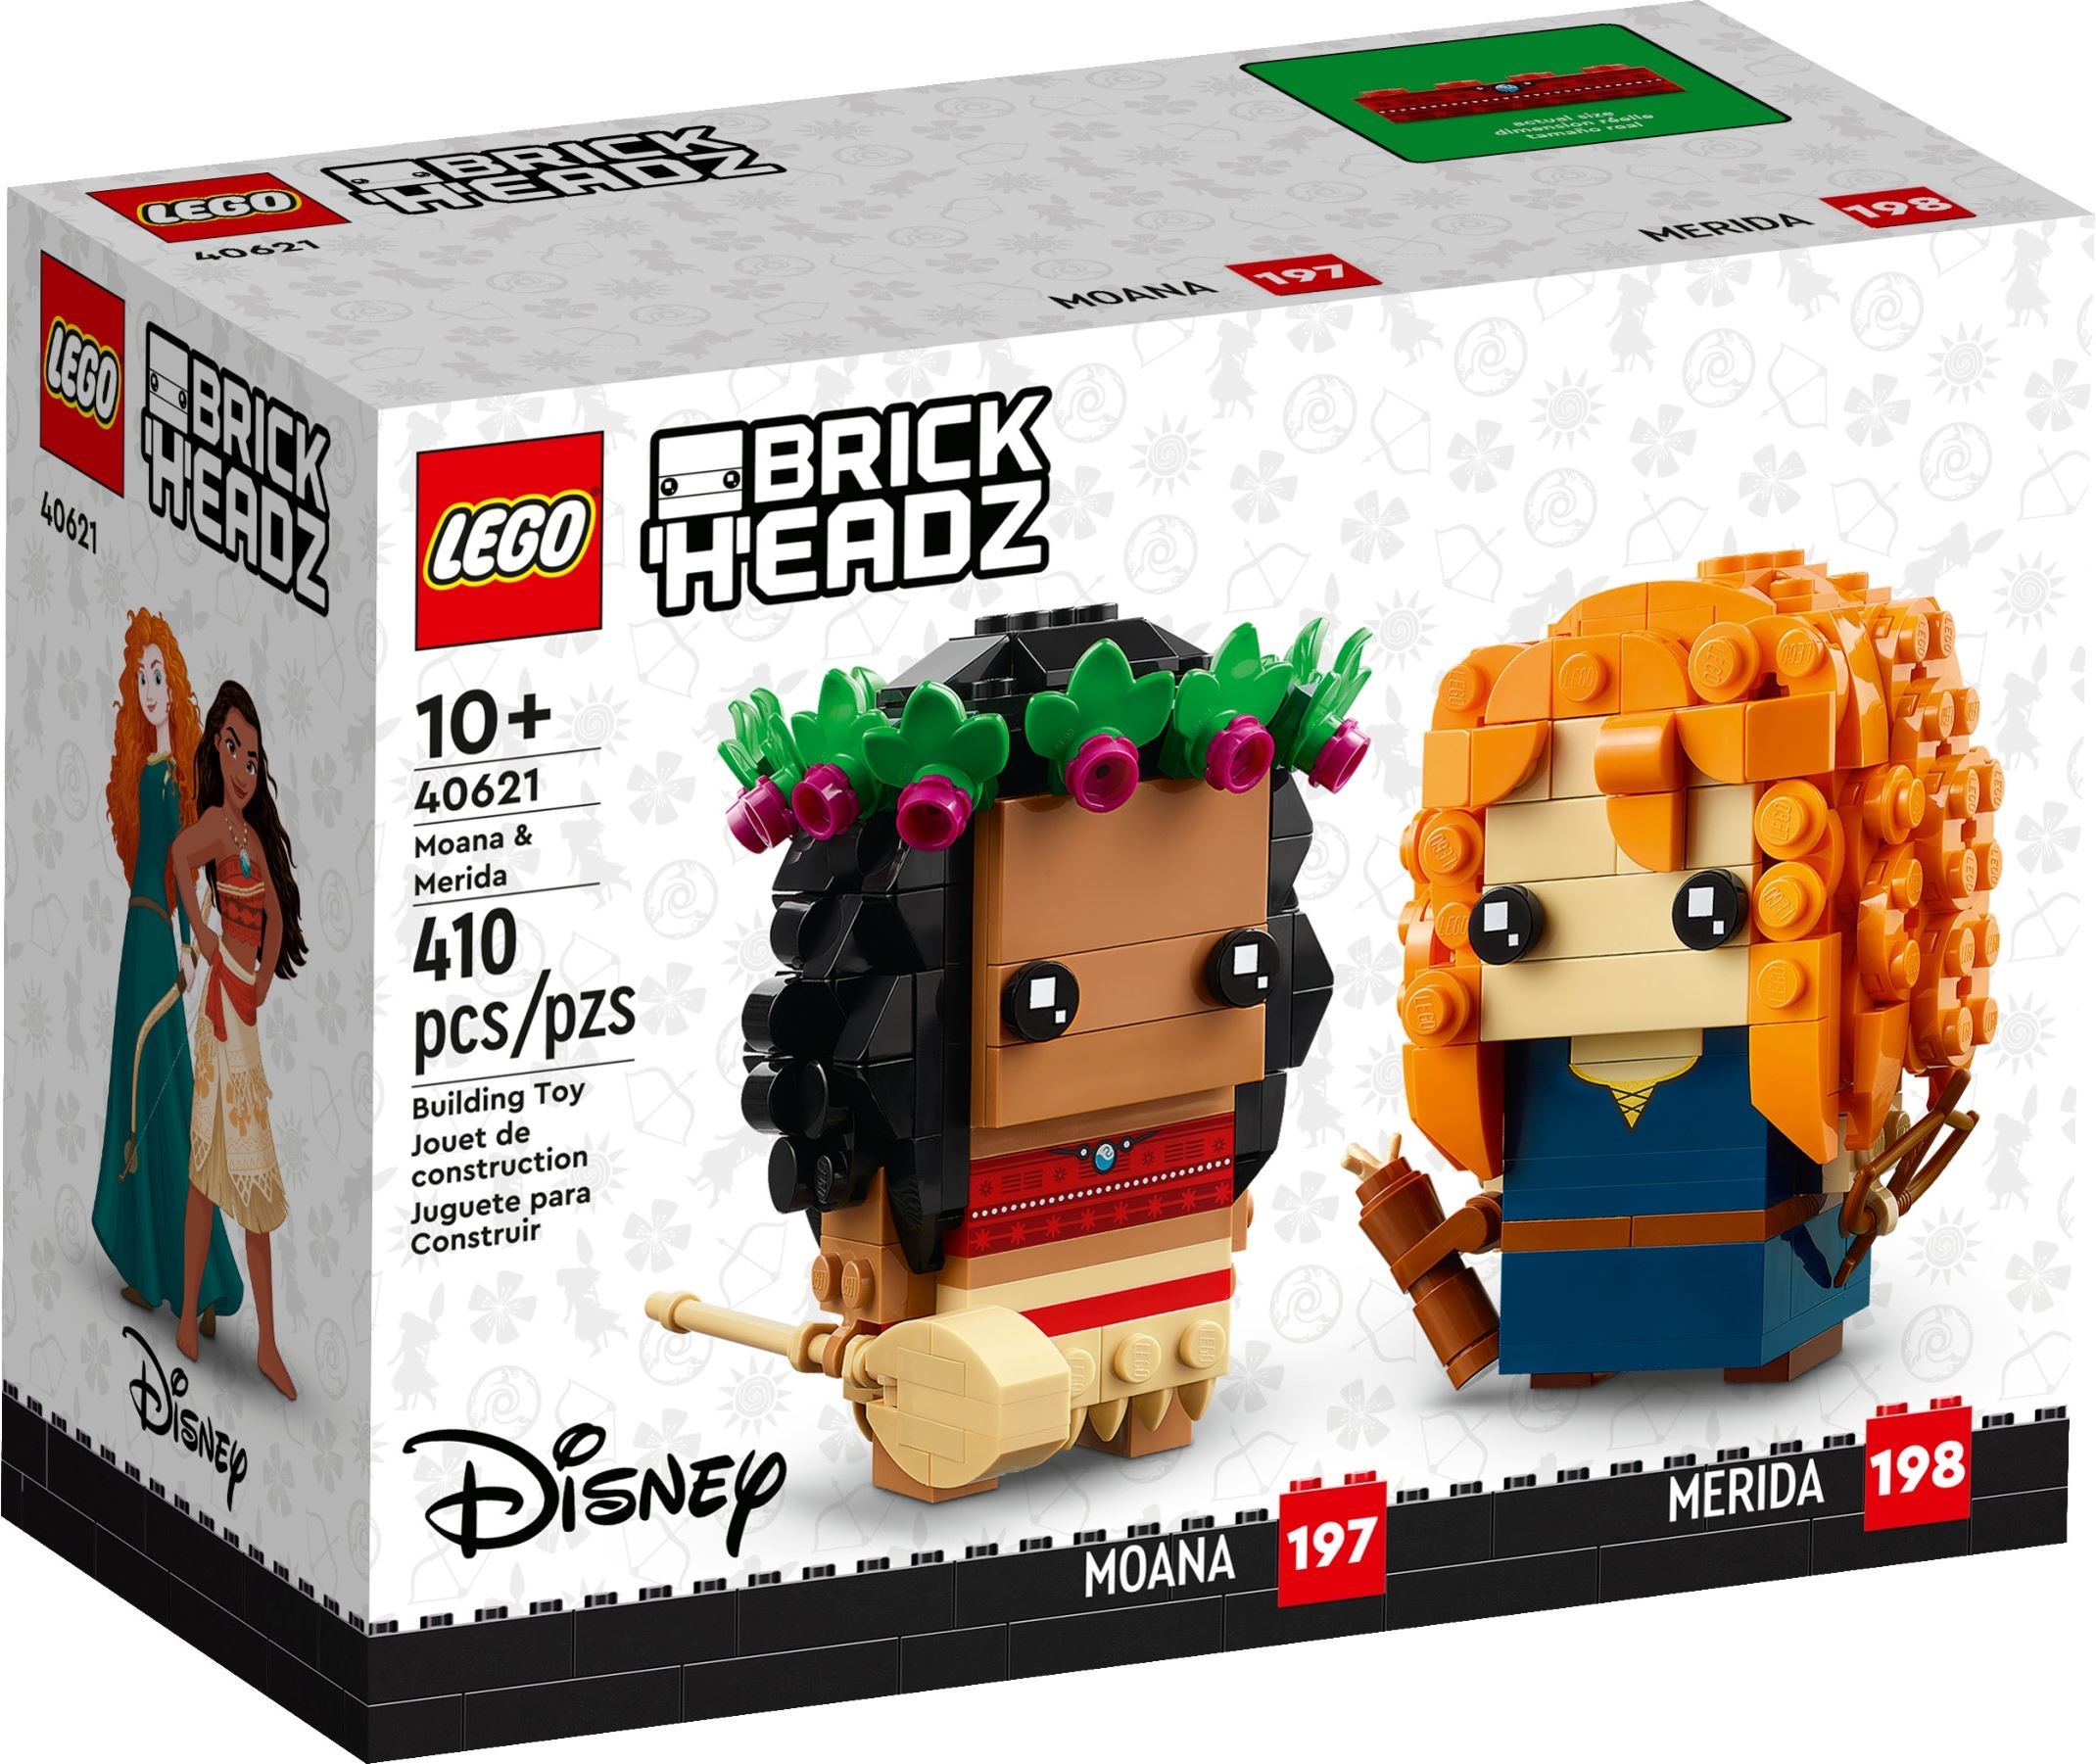 2140px x 1801px - Disney BrickHeadz official images! | Brickset: LEGO set guide and database